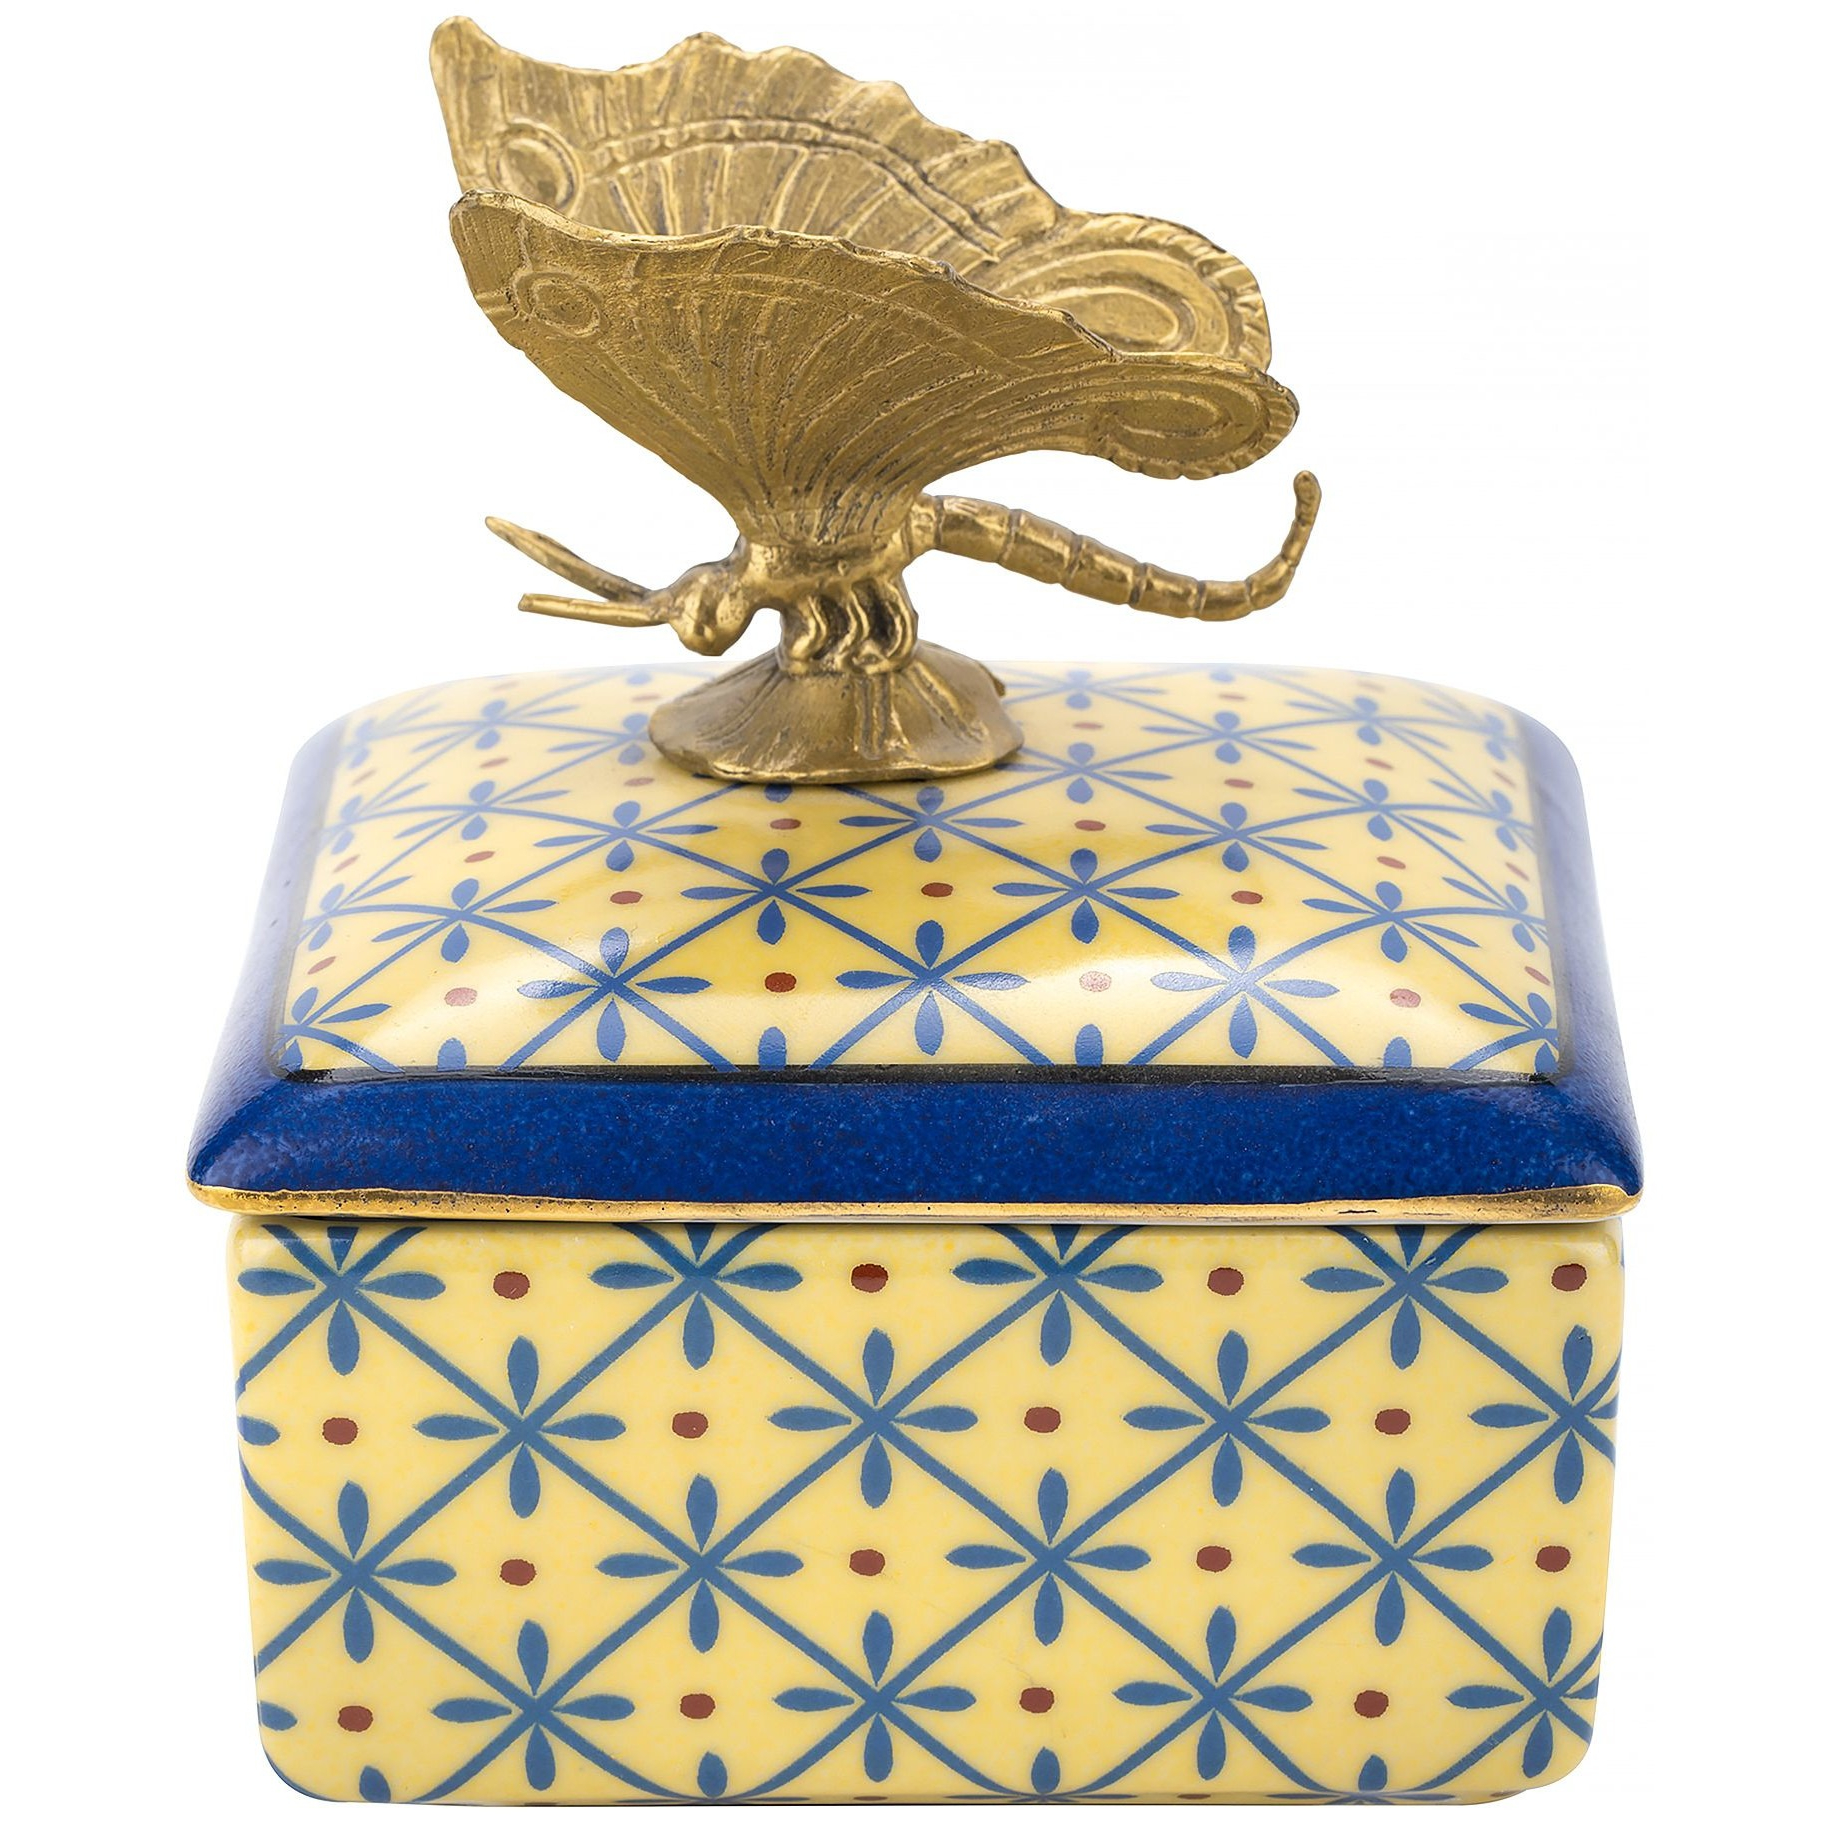 Шкатулка Glasar с бабочкой желтая 10х10х10 см шкатулка glasar на ножках синяя с золотым декором 17х12х8 см